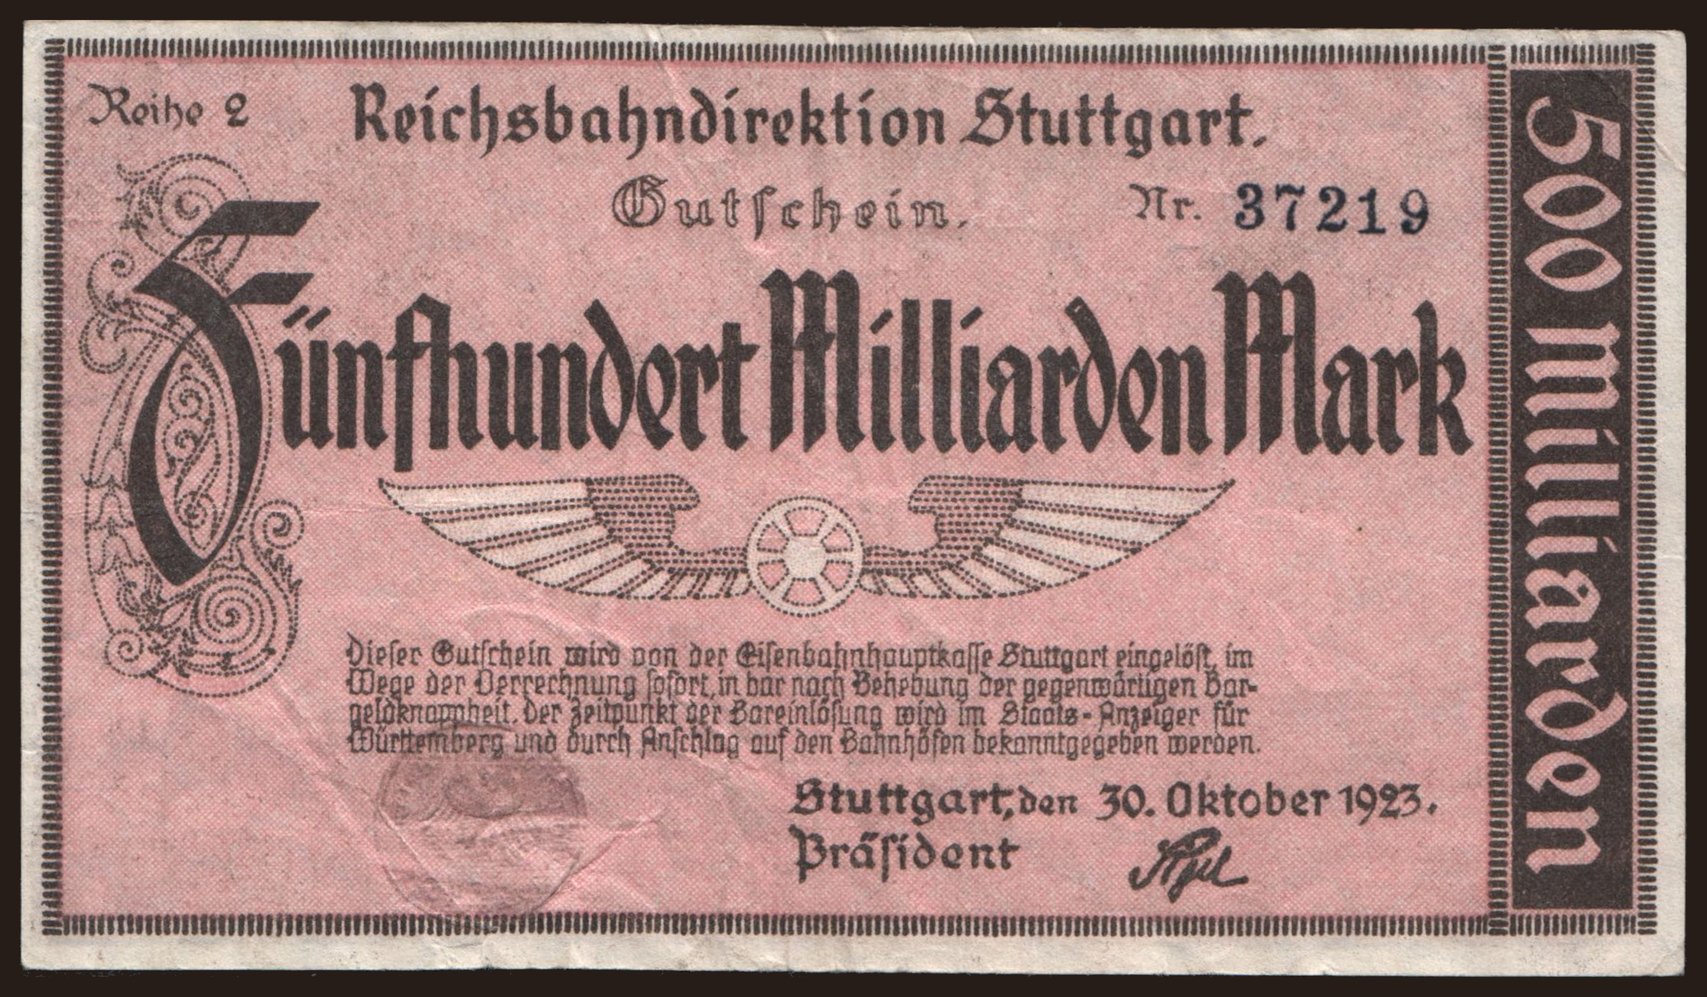 Stuttgart, 500.000.000.000 Mark, 1923